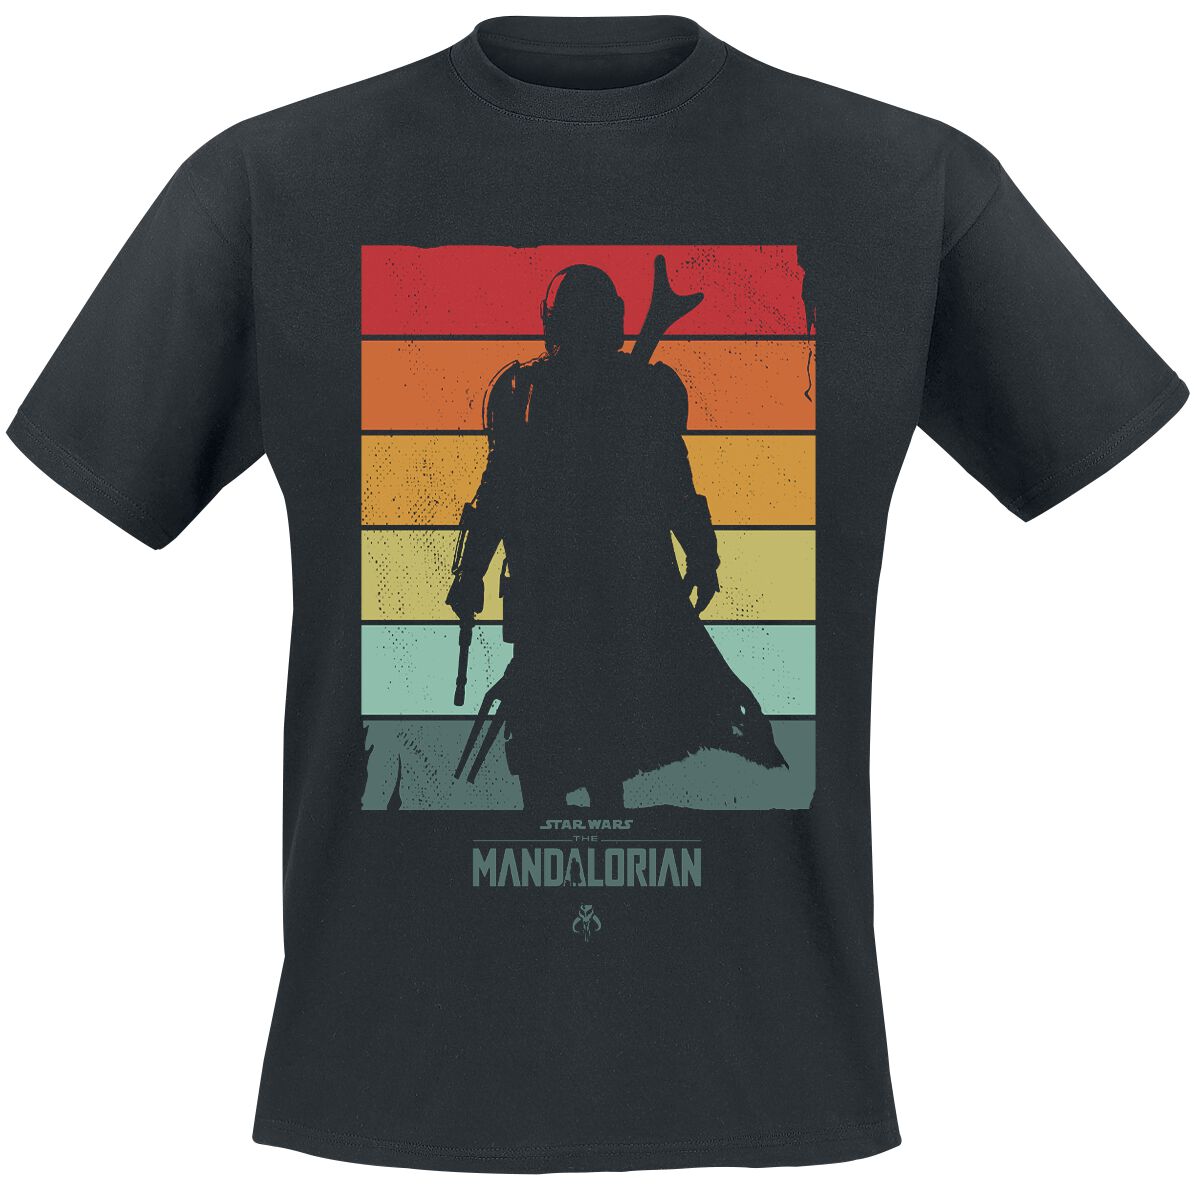 Star Wars T-Shirt - The Mandalorian - Spectrum - L bis XXL - für Männer - Größe L - schwarz  - Lizenzierter Fanartikel